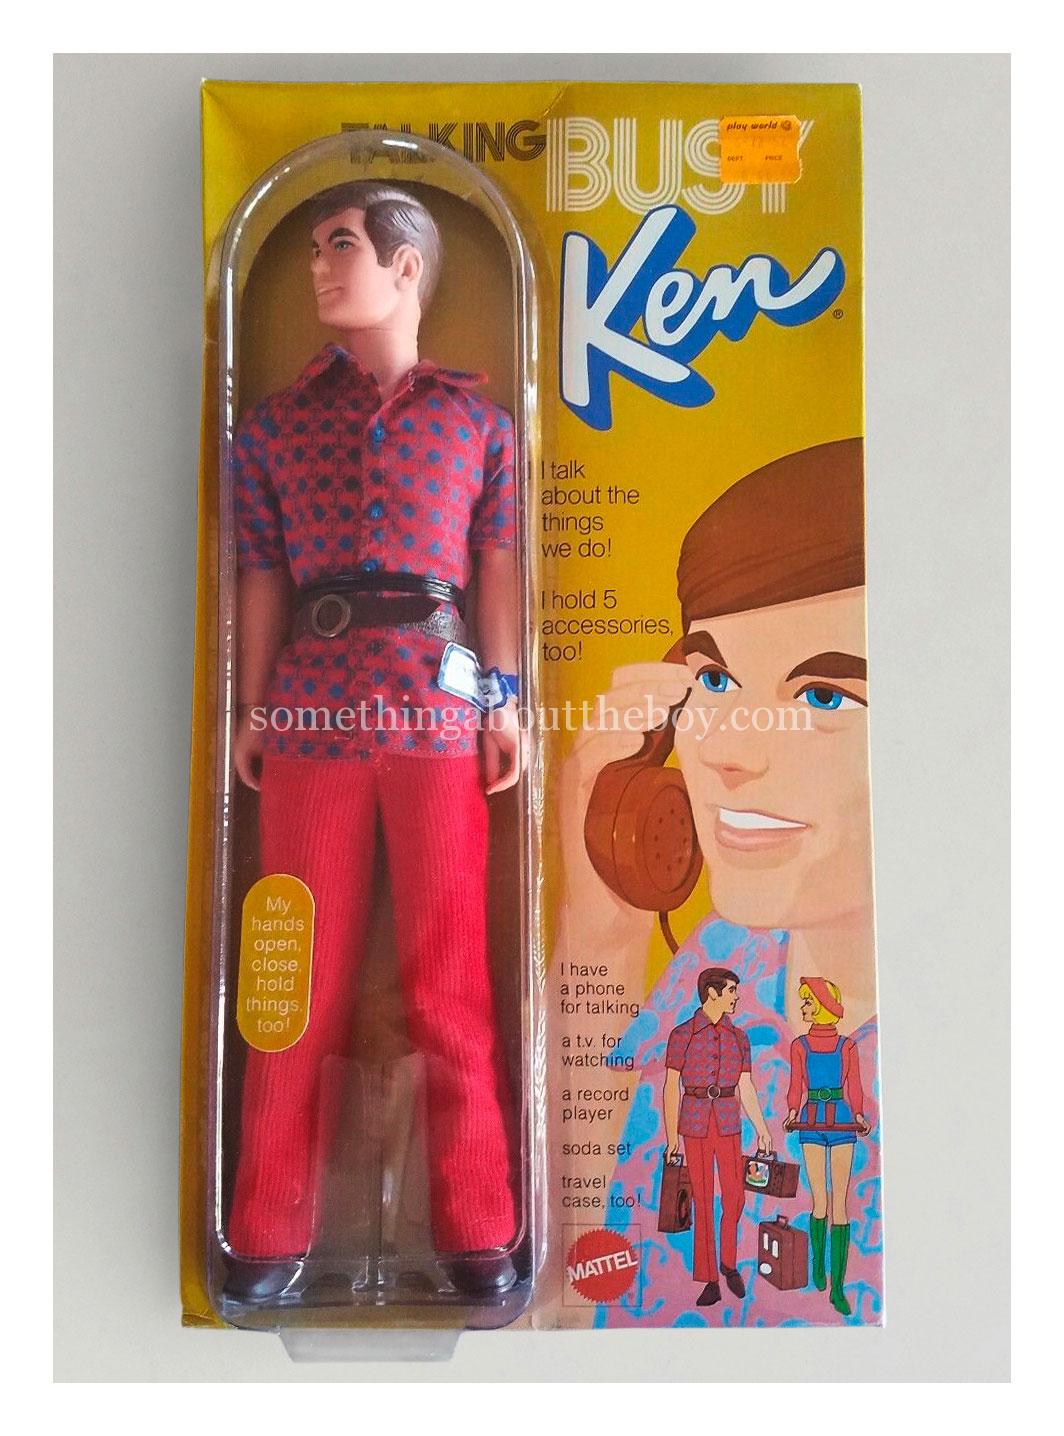 1972 #1196 Talking Busy Ken in original packaging